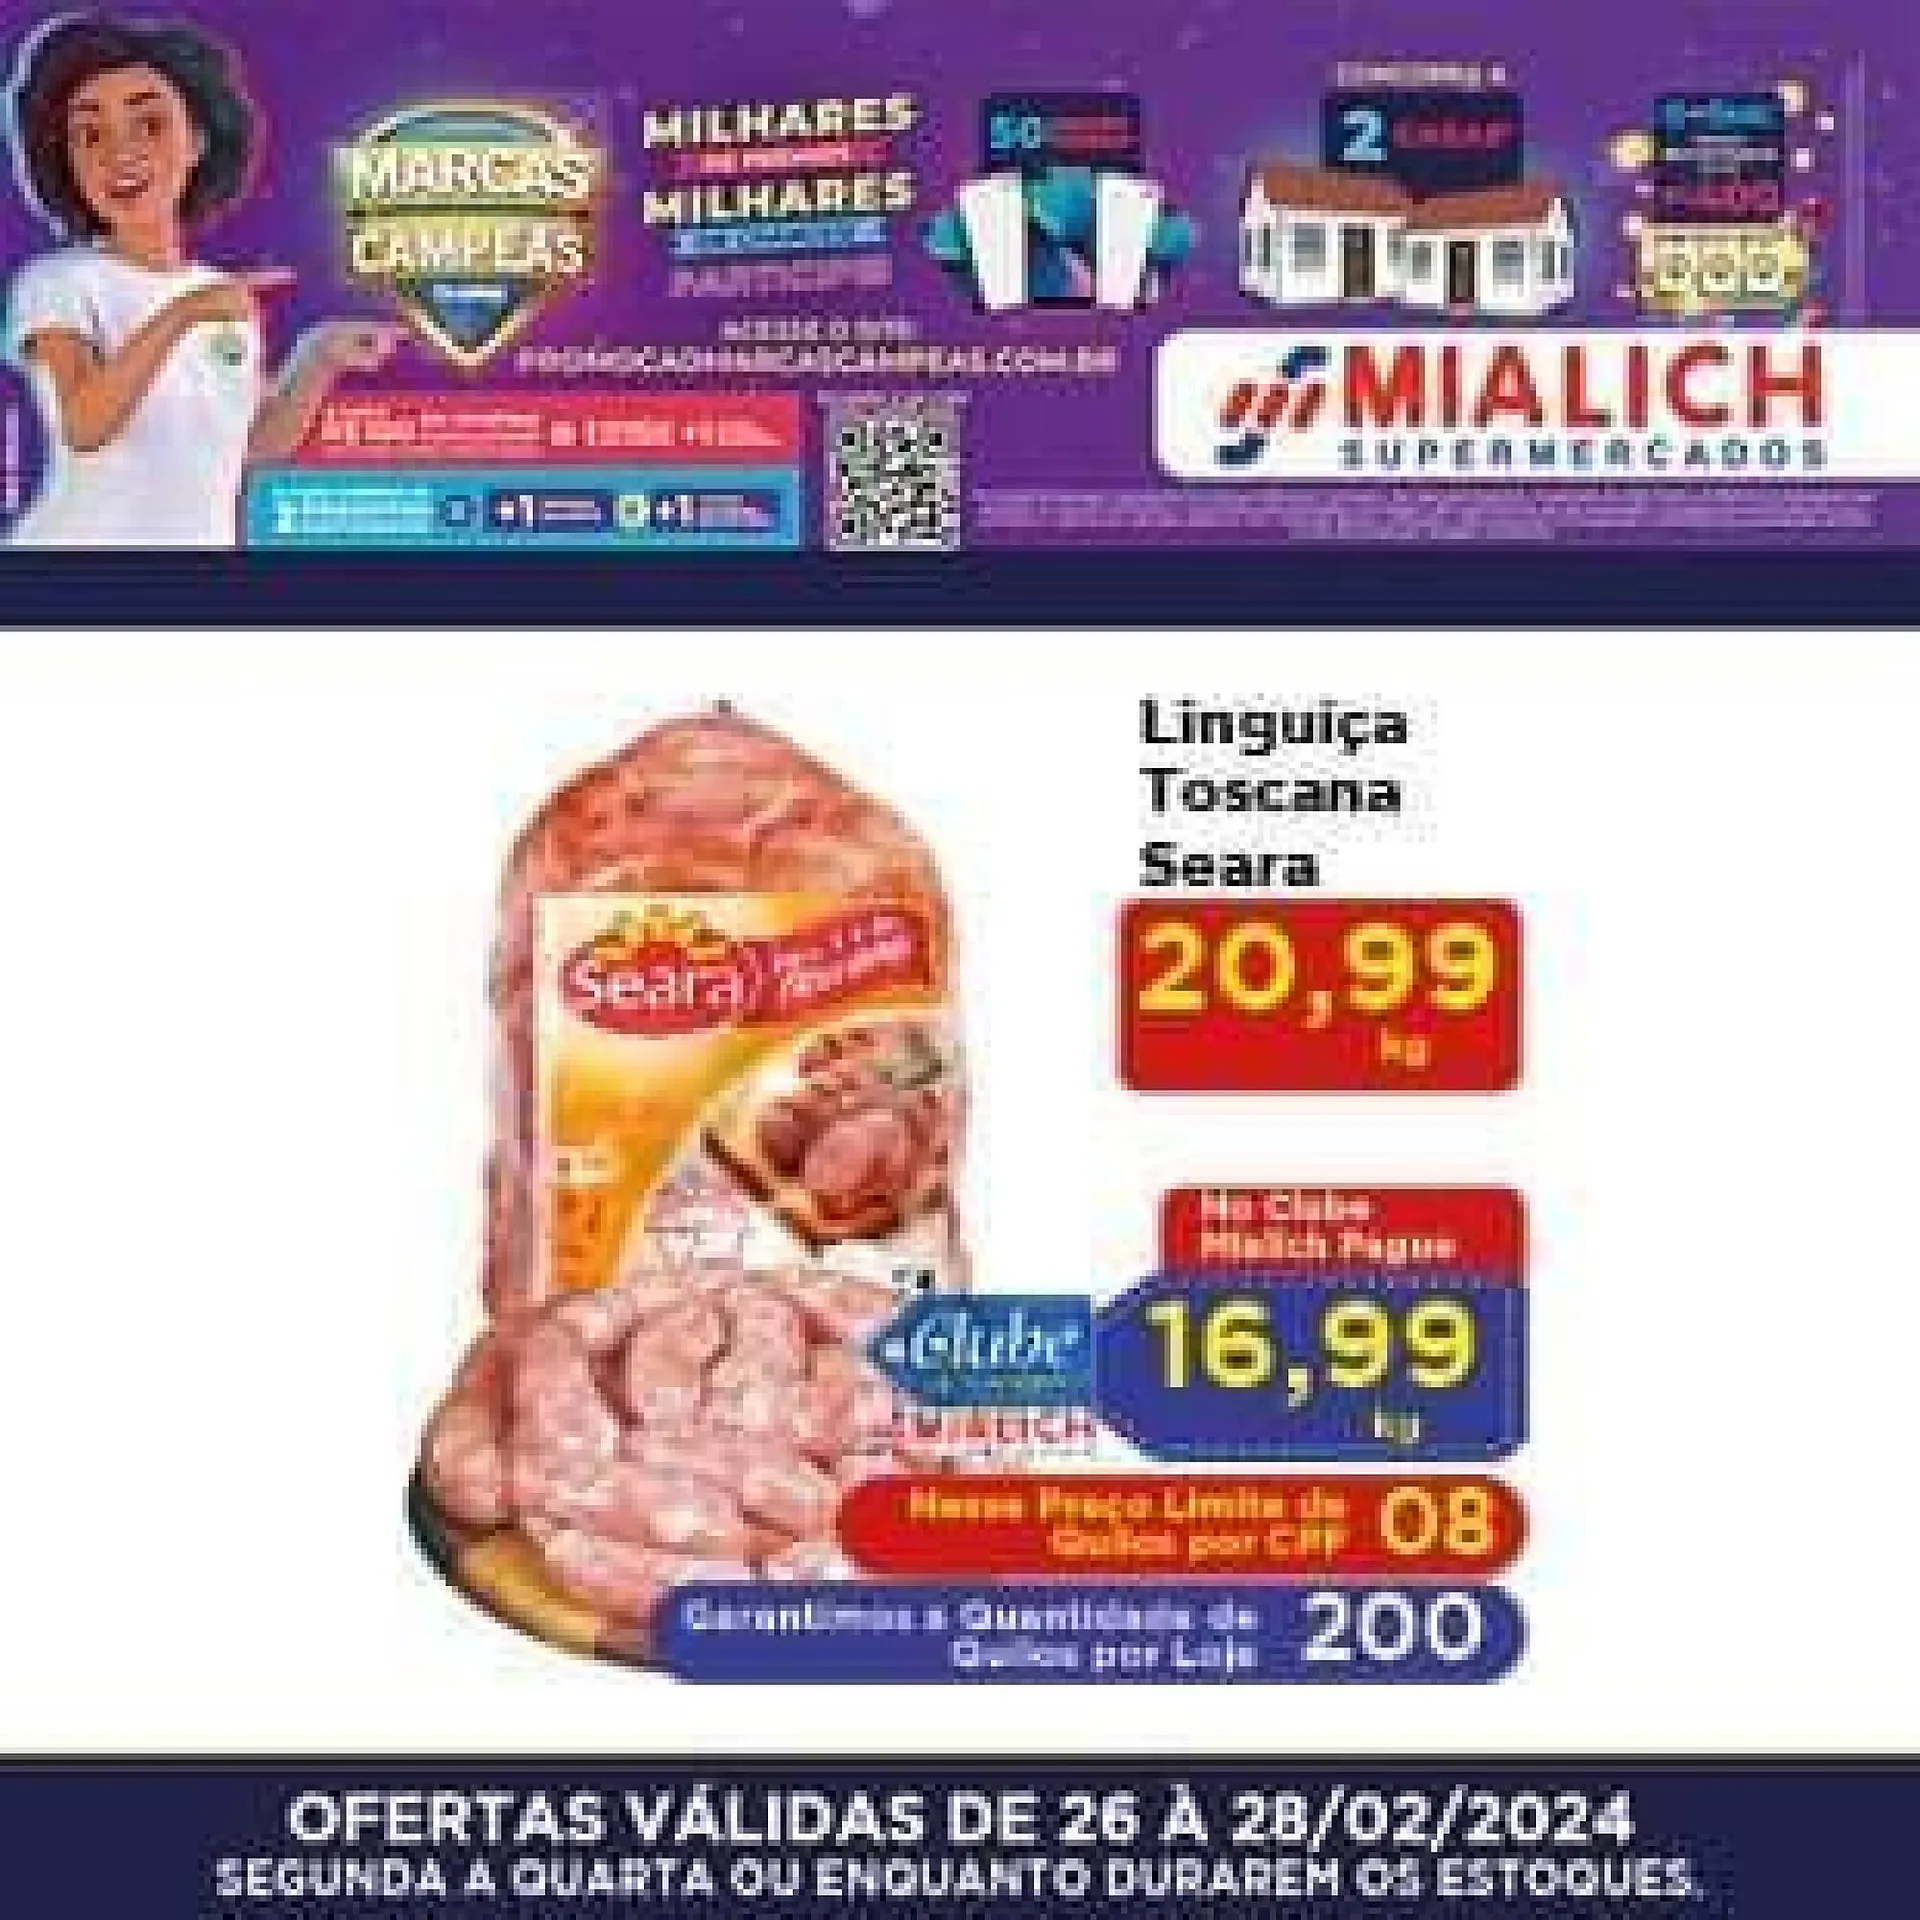 Encarte de Catálogo Mialich Supermercados 26 de fevereiro até 28 de fevereiro 2024 - Pagina 